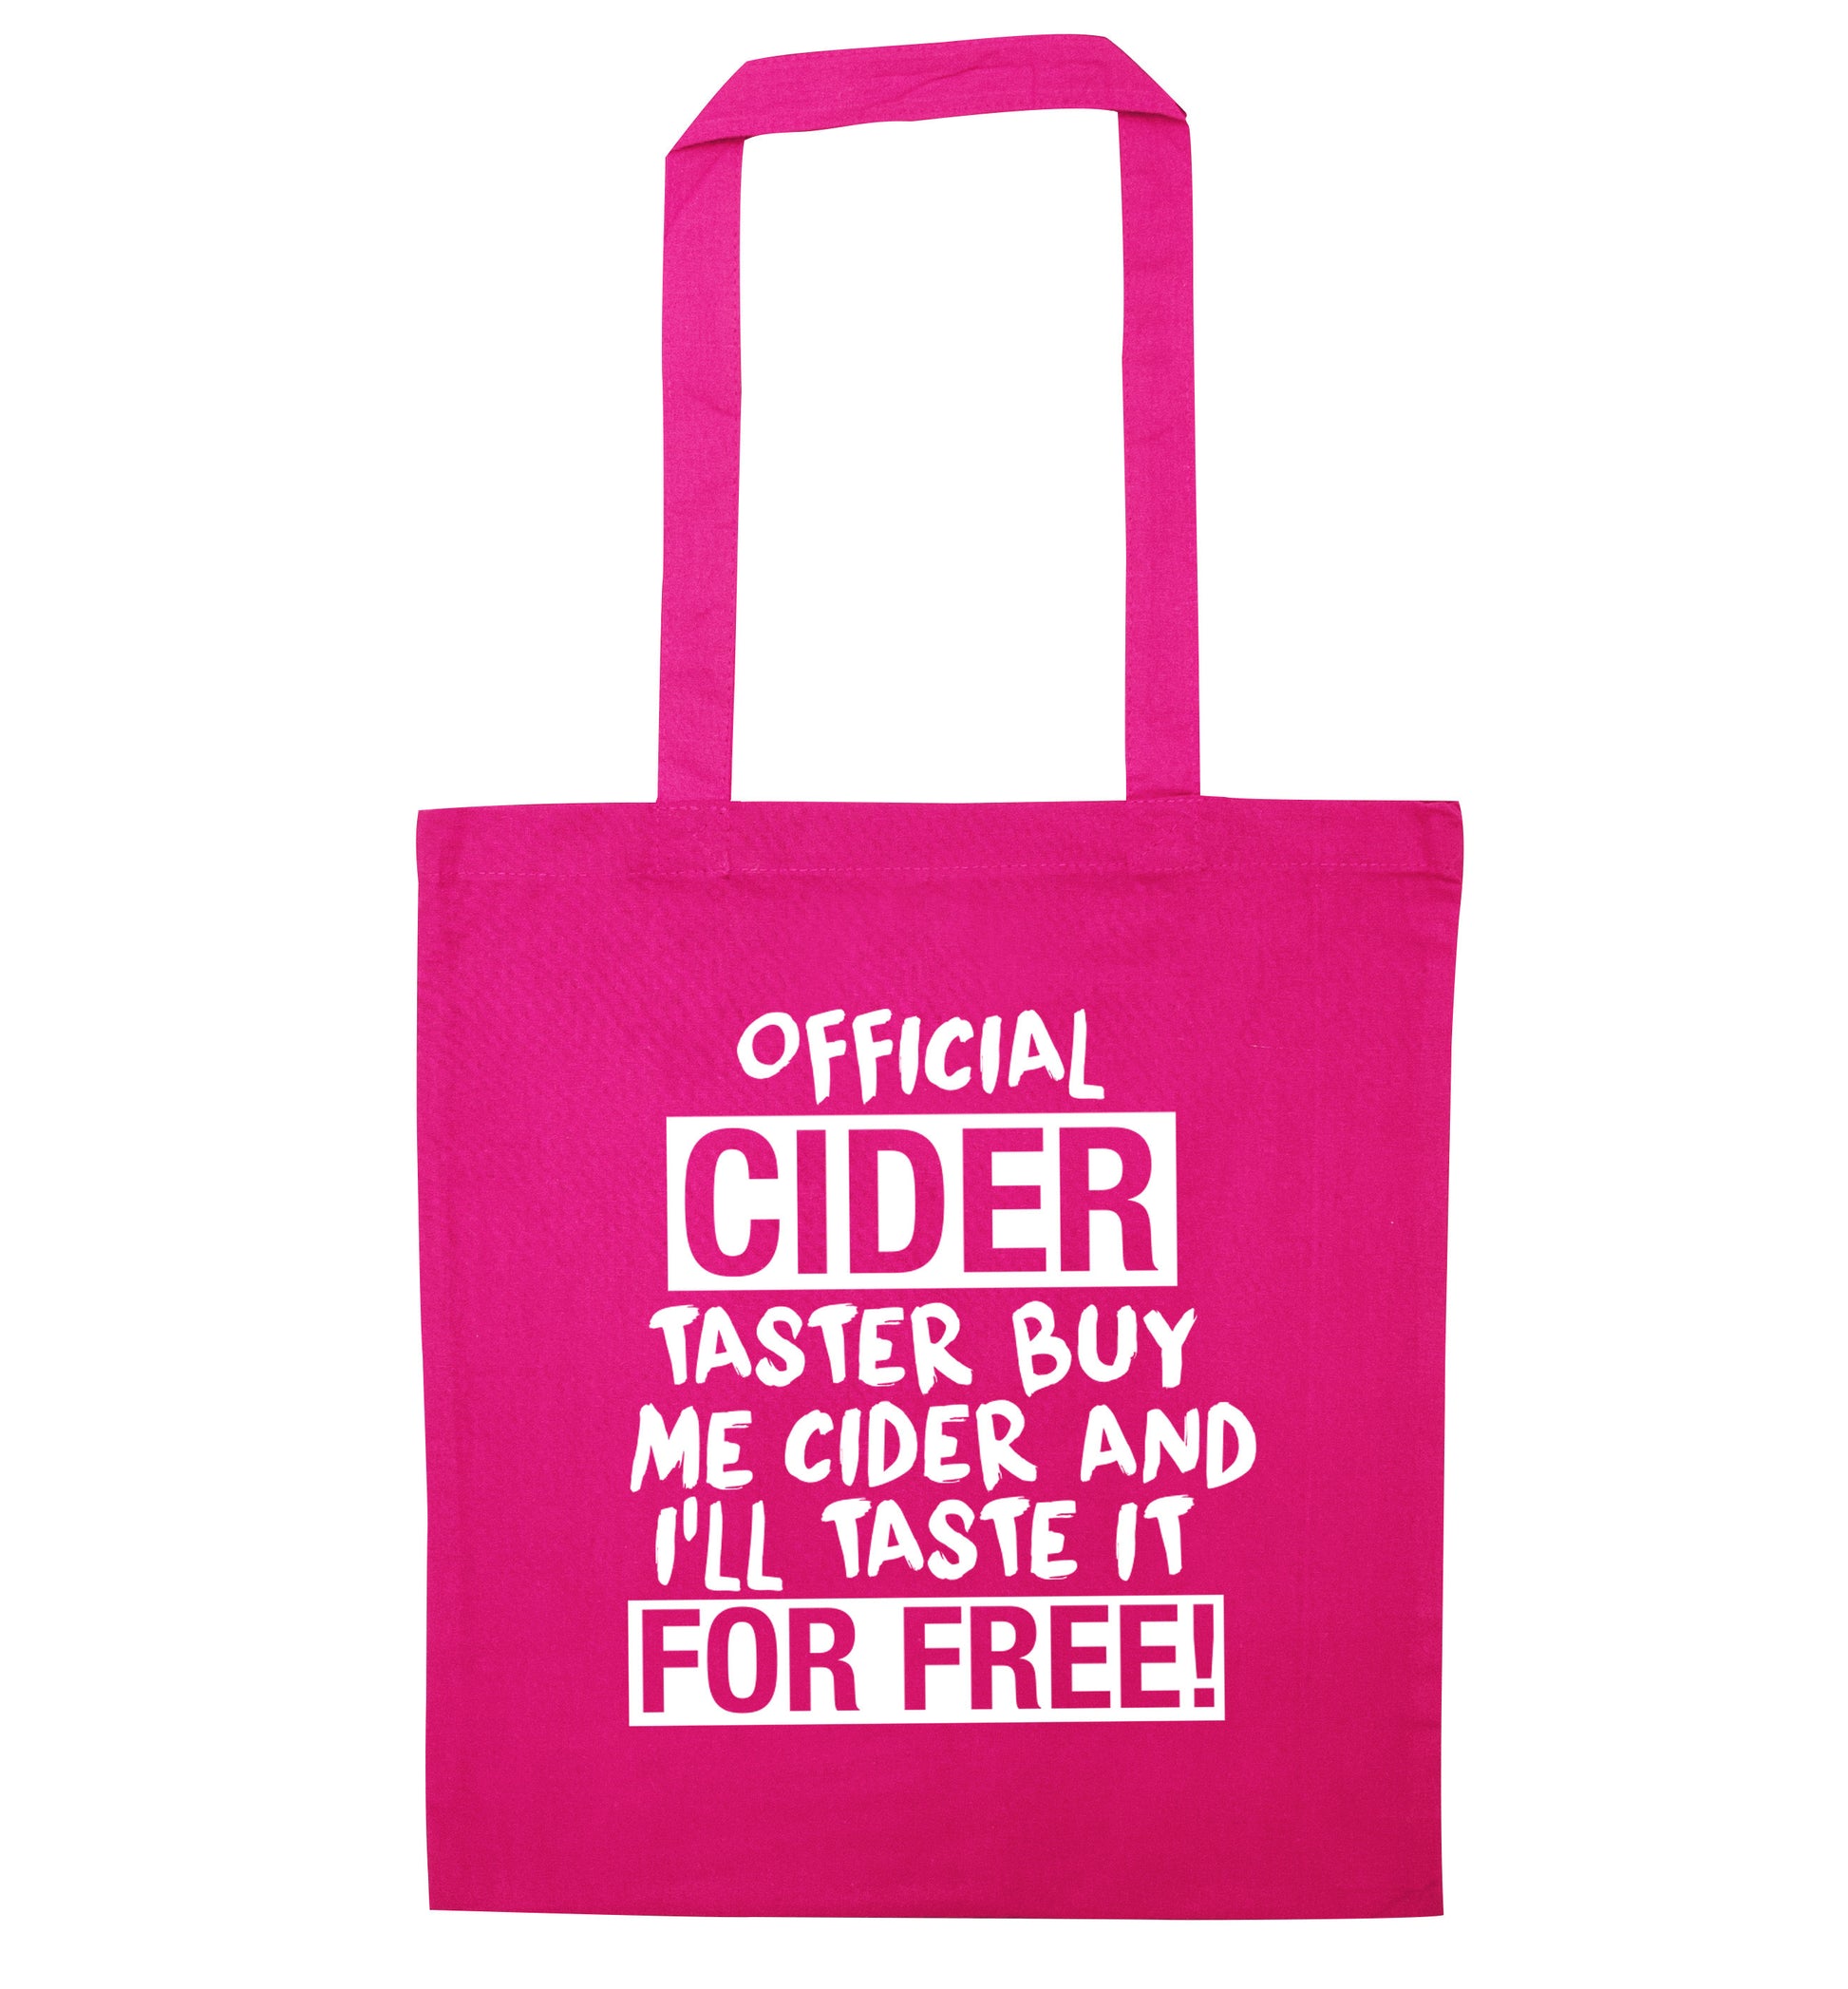 Official cider taster buy me cider and I'll taste it for free! pink tote bag